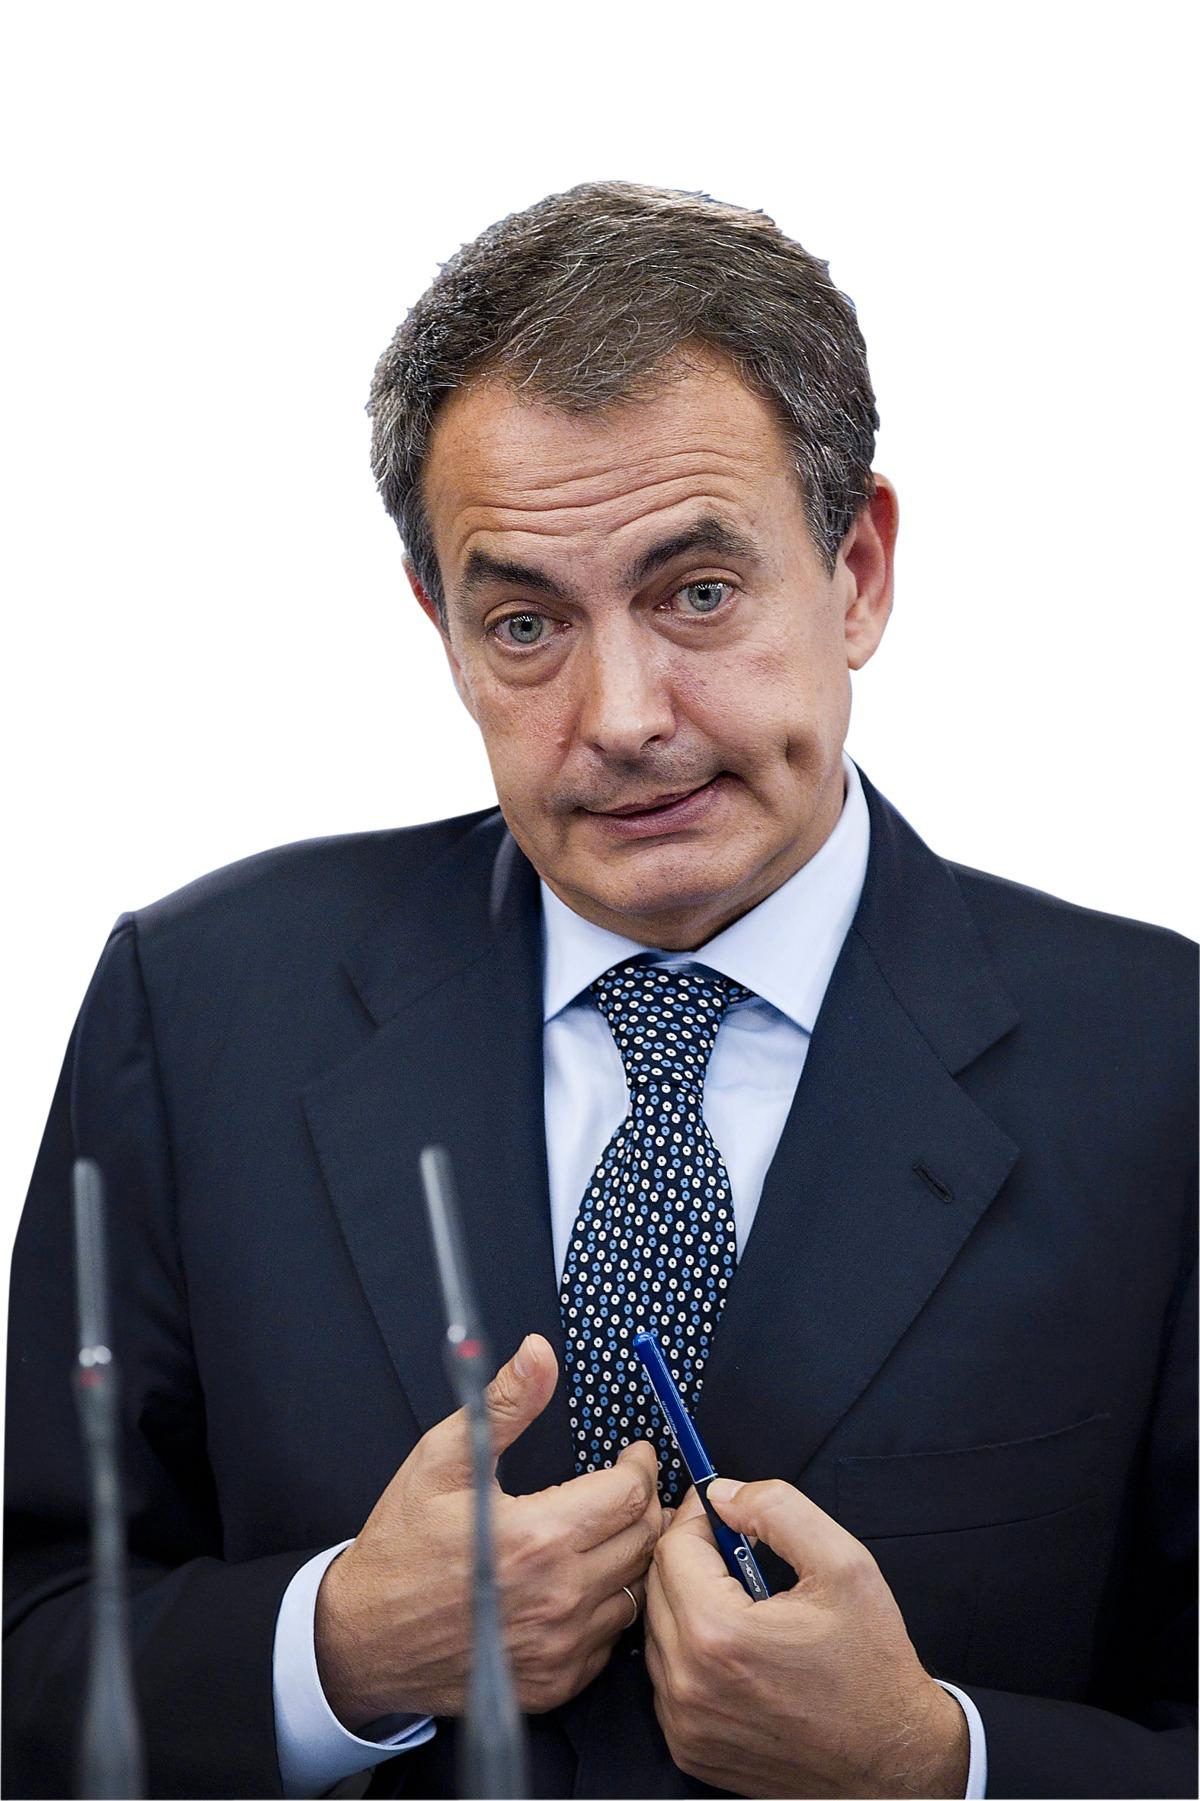 José Luis Rodriquez Zapatero, Spaniens premiärminister, var alldeles för långsam med att inse allvaret i situationen. Avgår som partiledare inför nästa val.